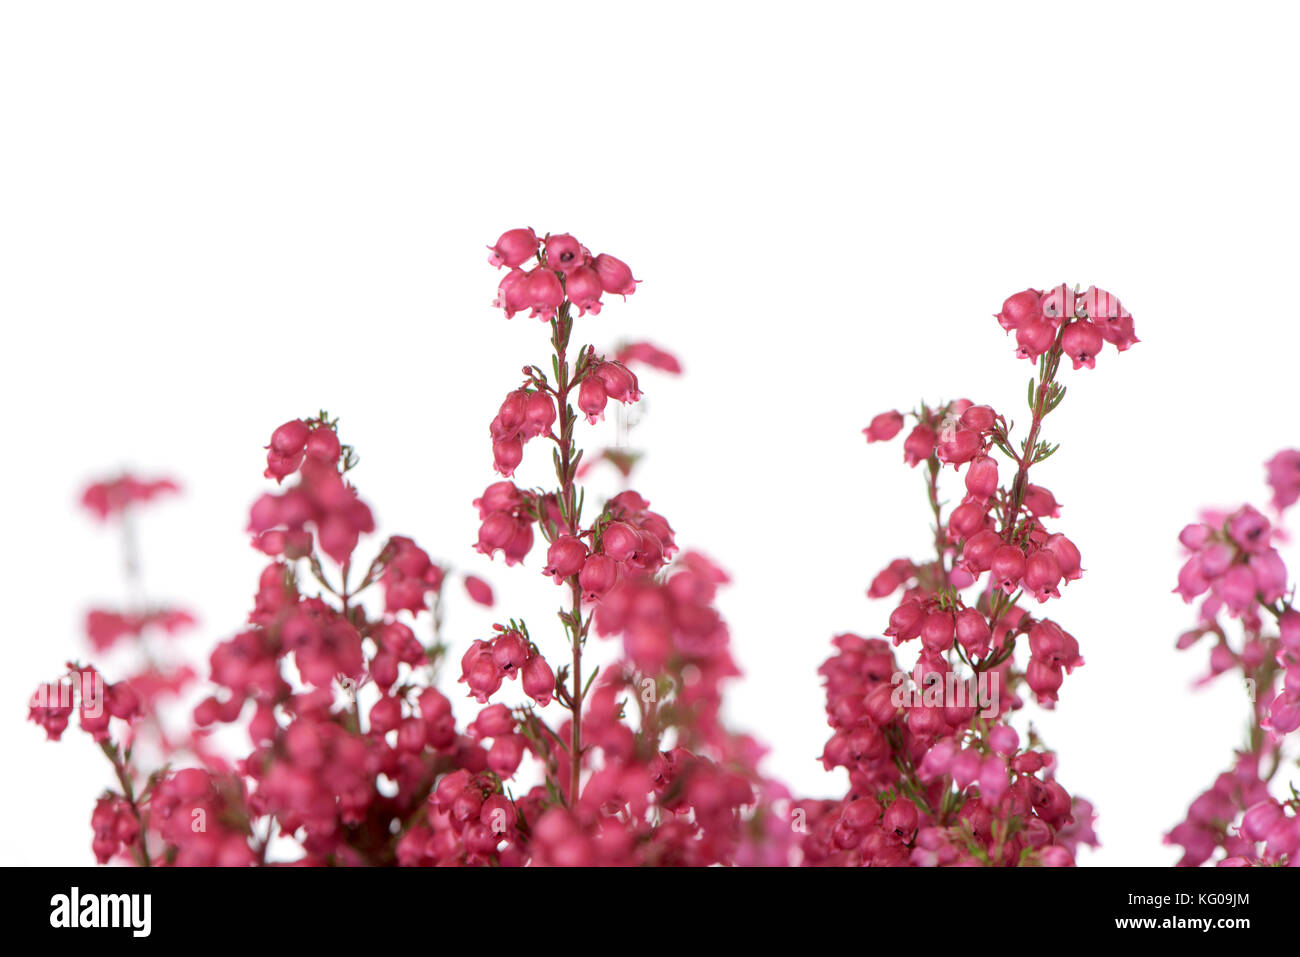 Gros plan des fleurs roses d'un bell heather plante contre un fond blanc Banque D'Images